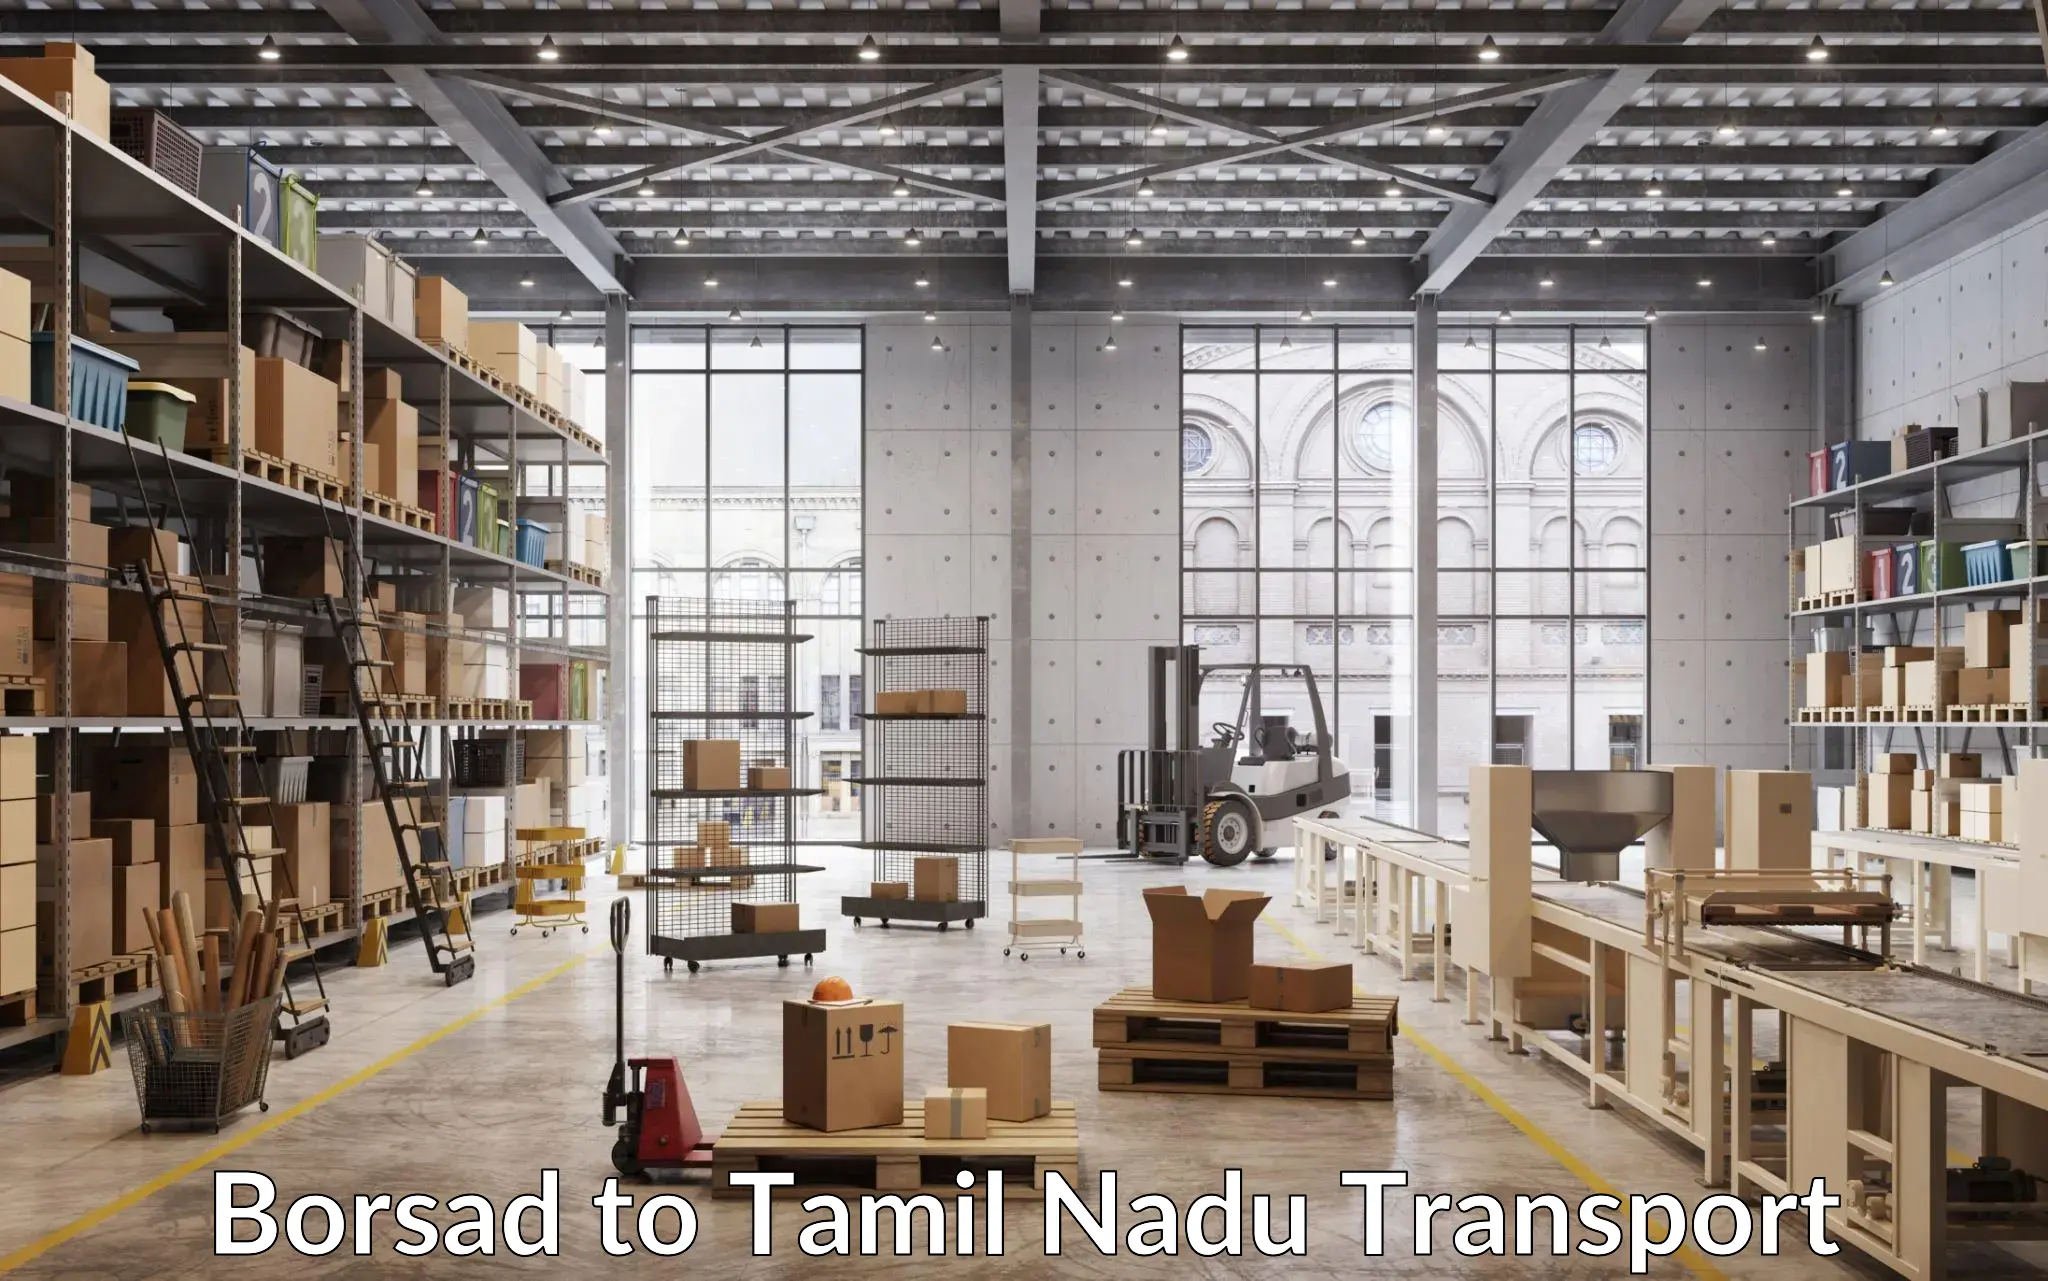 Transport in sharing Borsad to Tamil Nadu